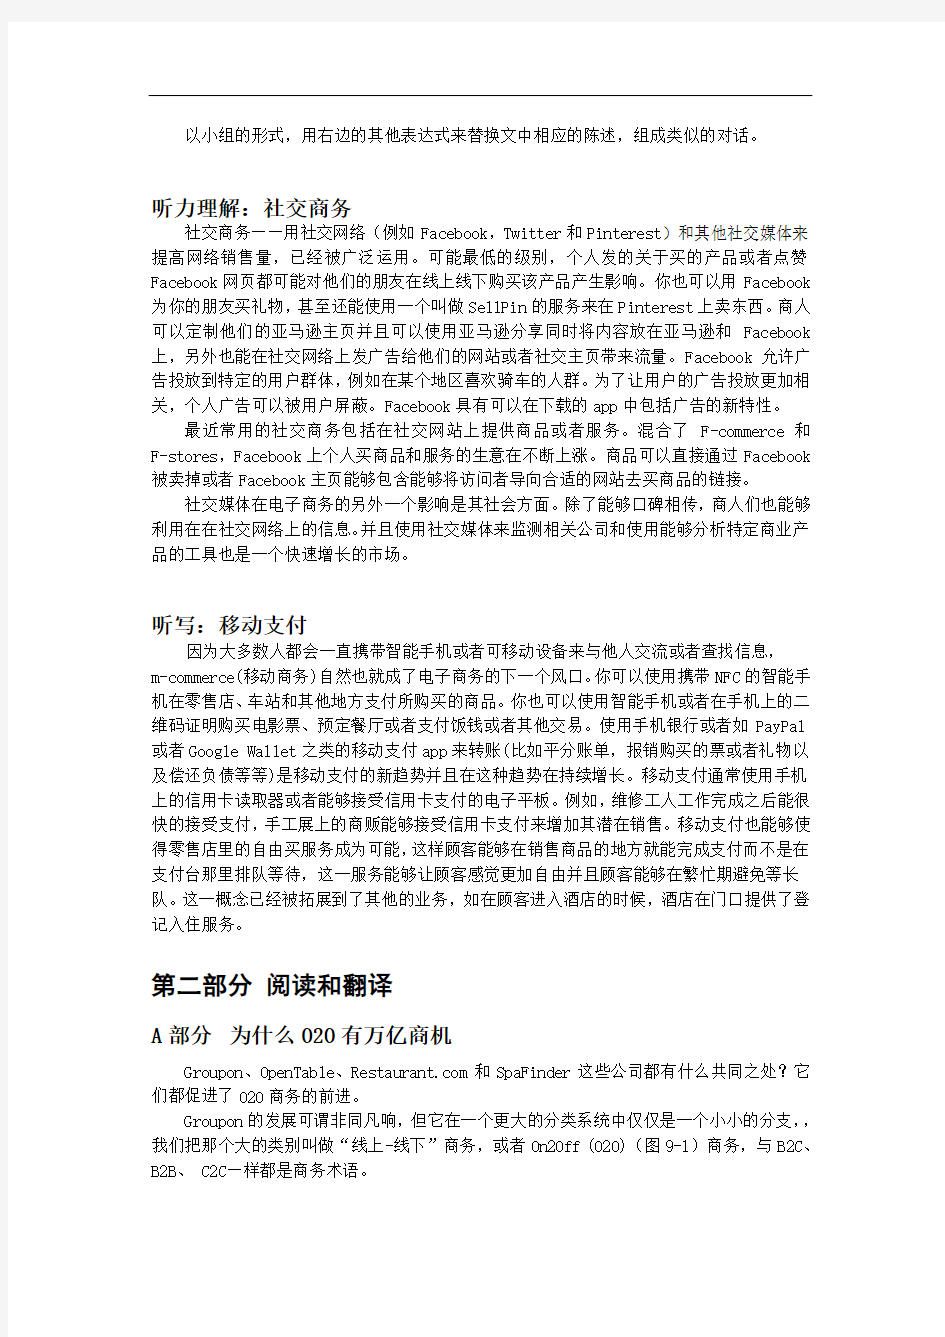 大学实用计算机英语教程第2版翻译机工版9_中文-1-1